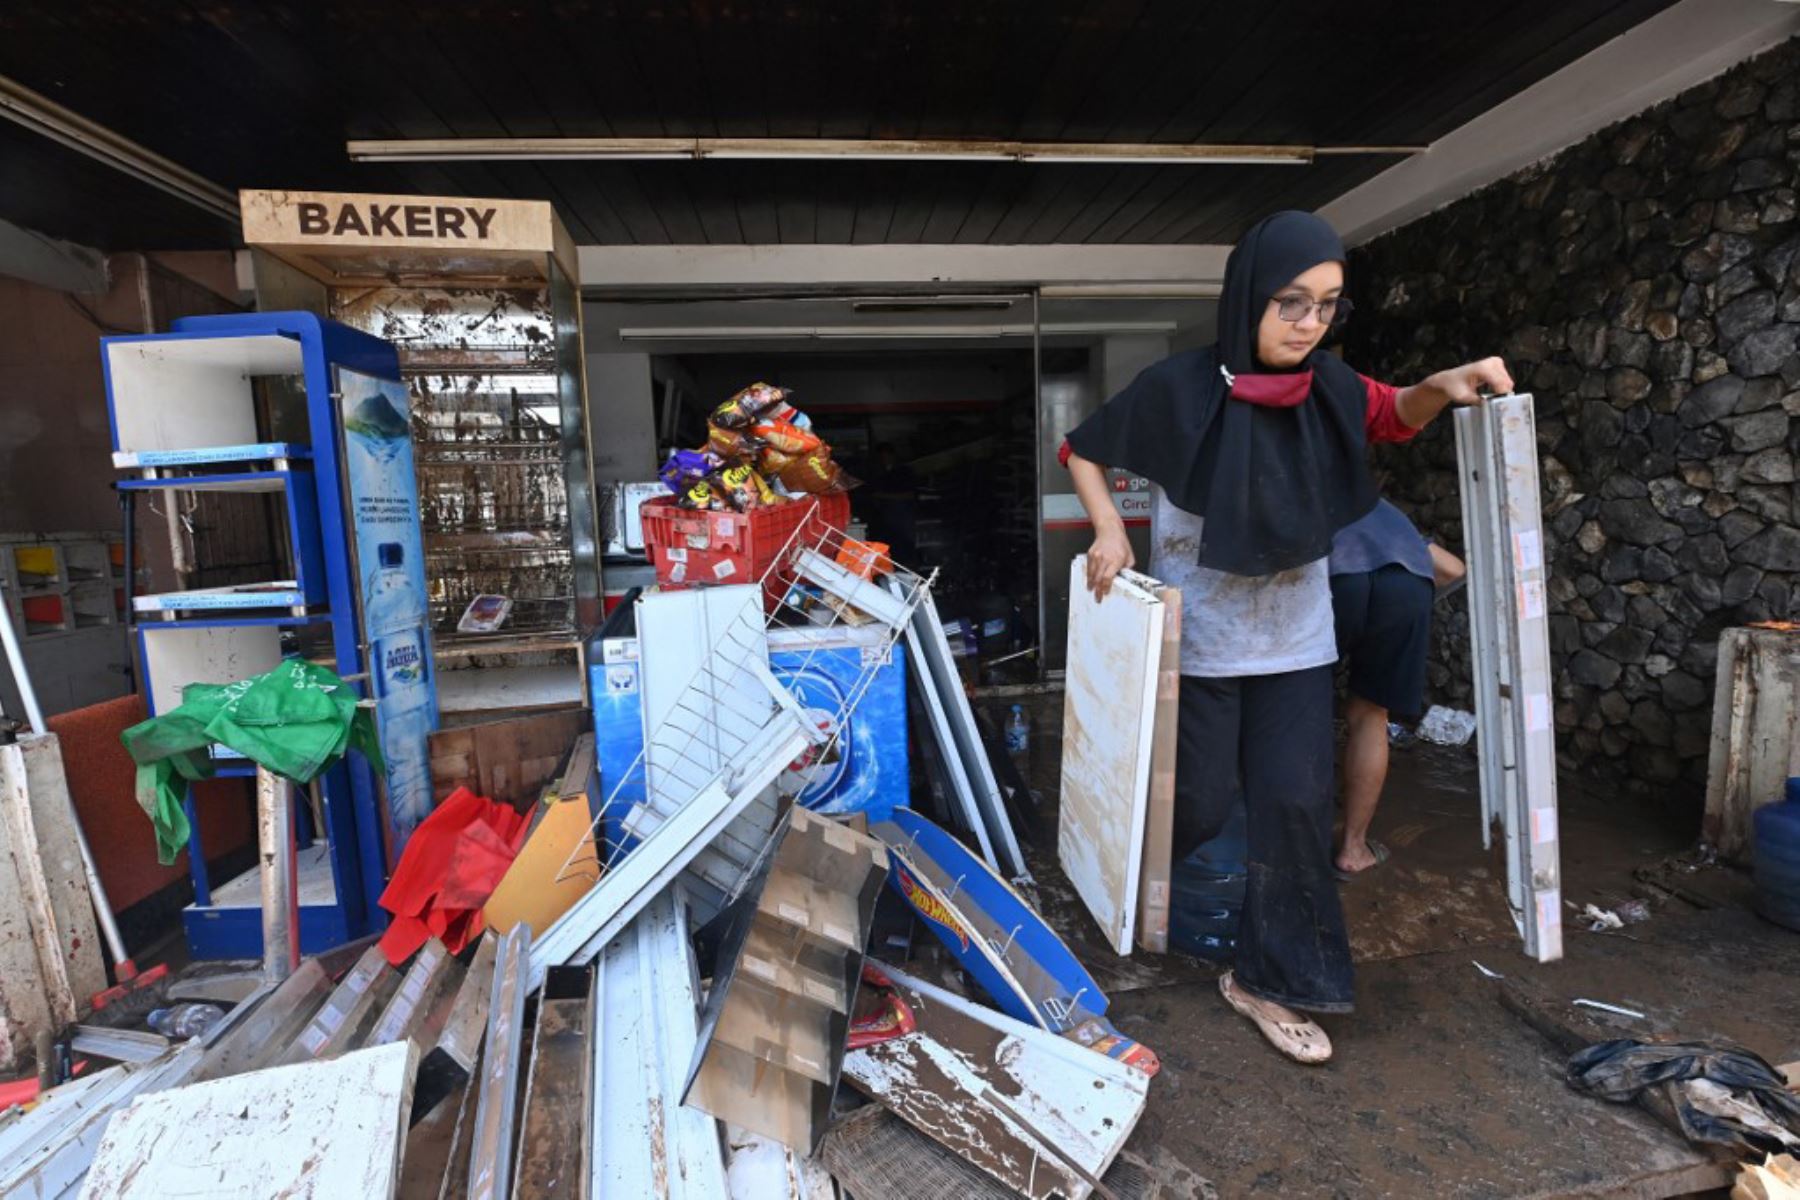 Las personas sacan artículos dañados por las inundaciones de una tienda en Kemang en Yakarta después que varias zonas de la capital de Indonesia se inundaron por las fuertes lluvias estacionales.

Foto: AFP